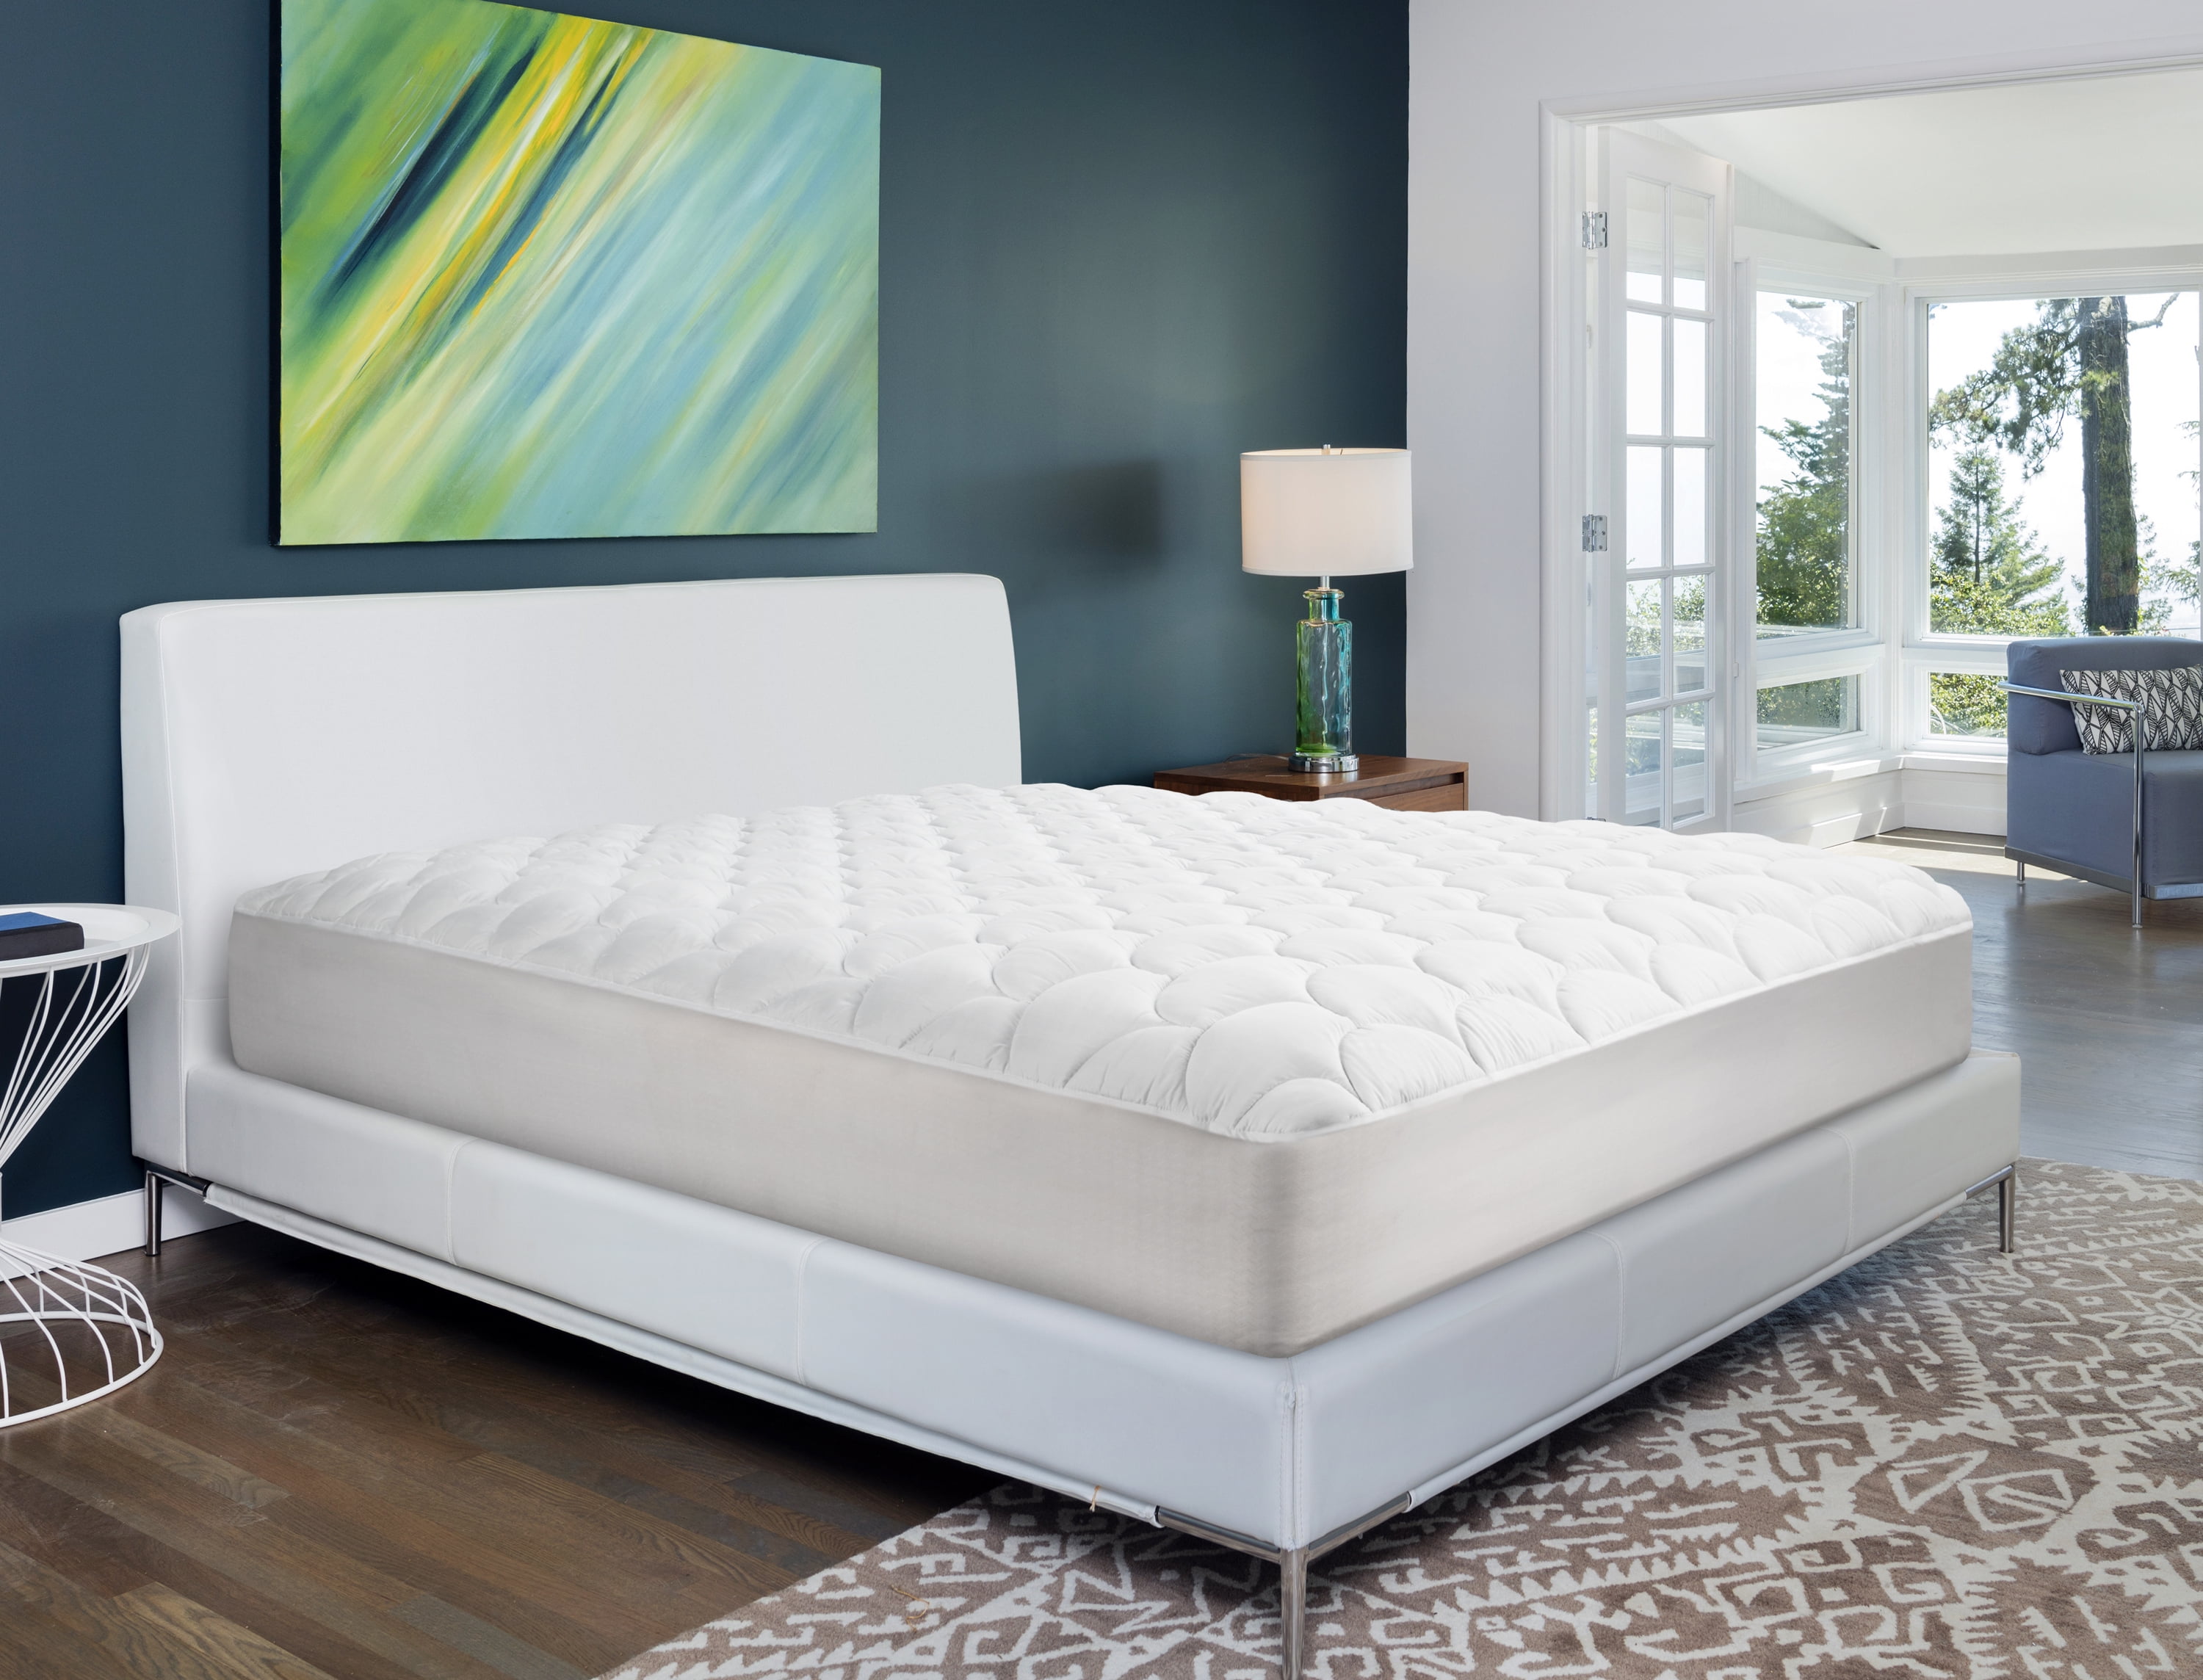 purepedic mattress bed adjestabl